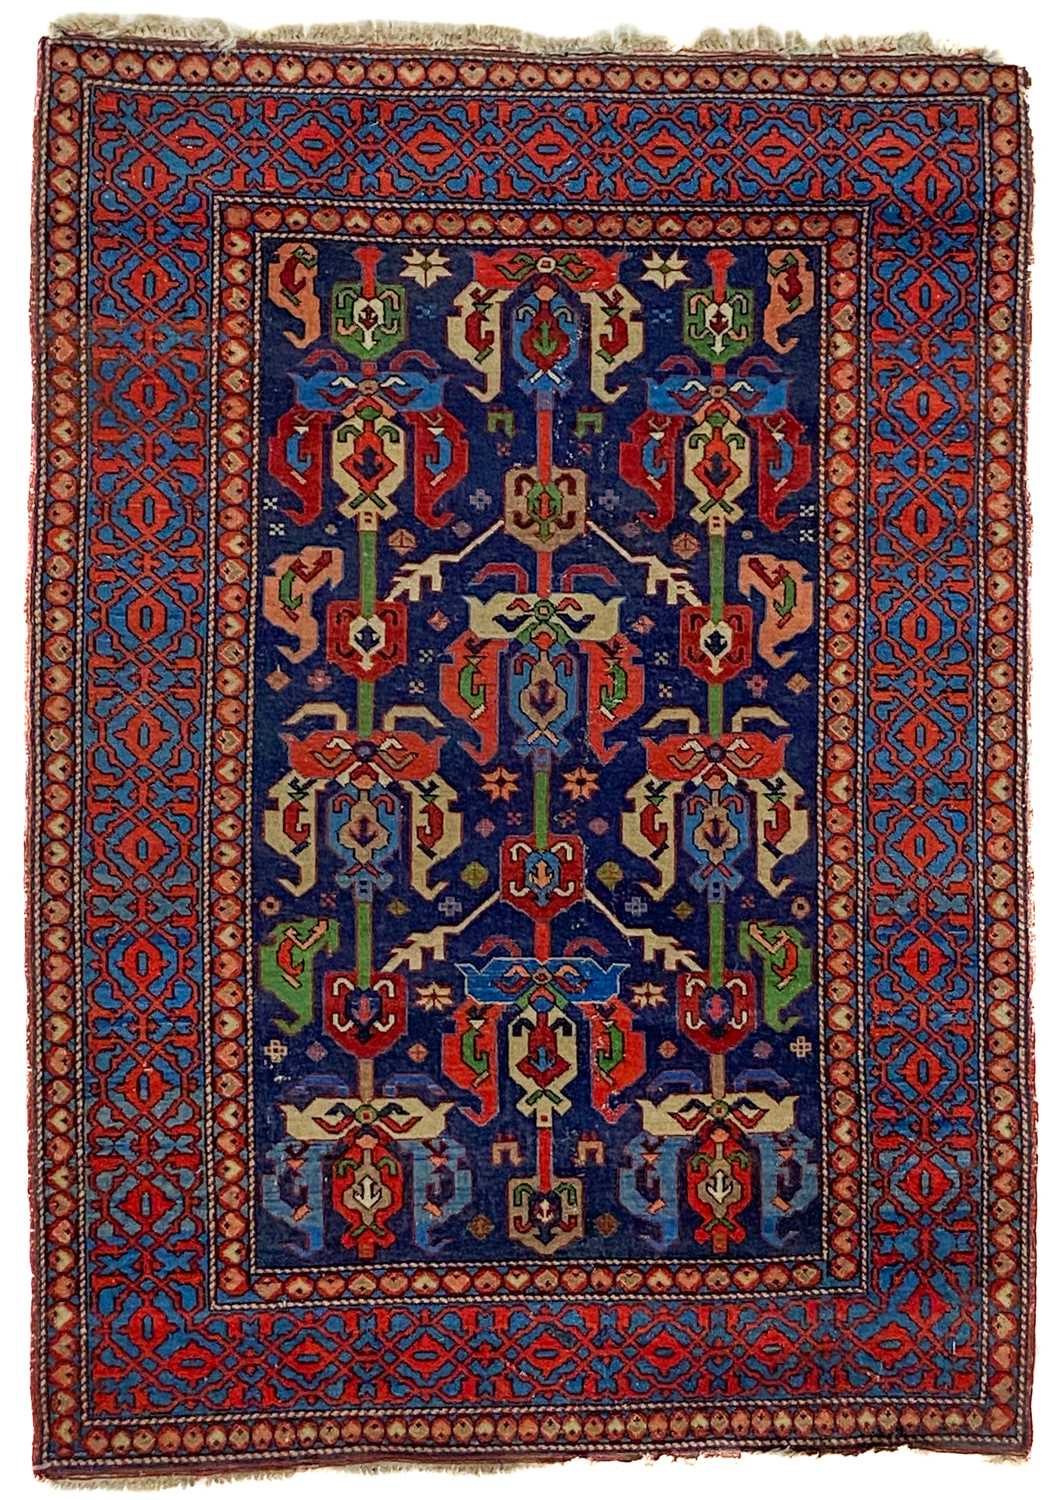 An Erivan rug, central Armenia, circa 1930.